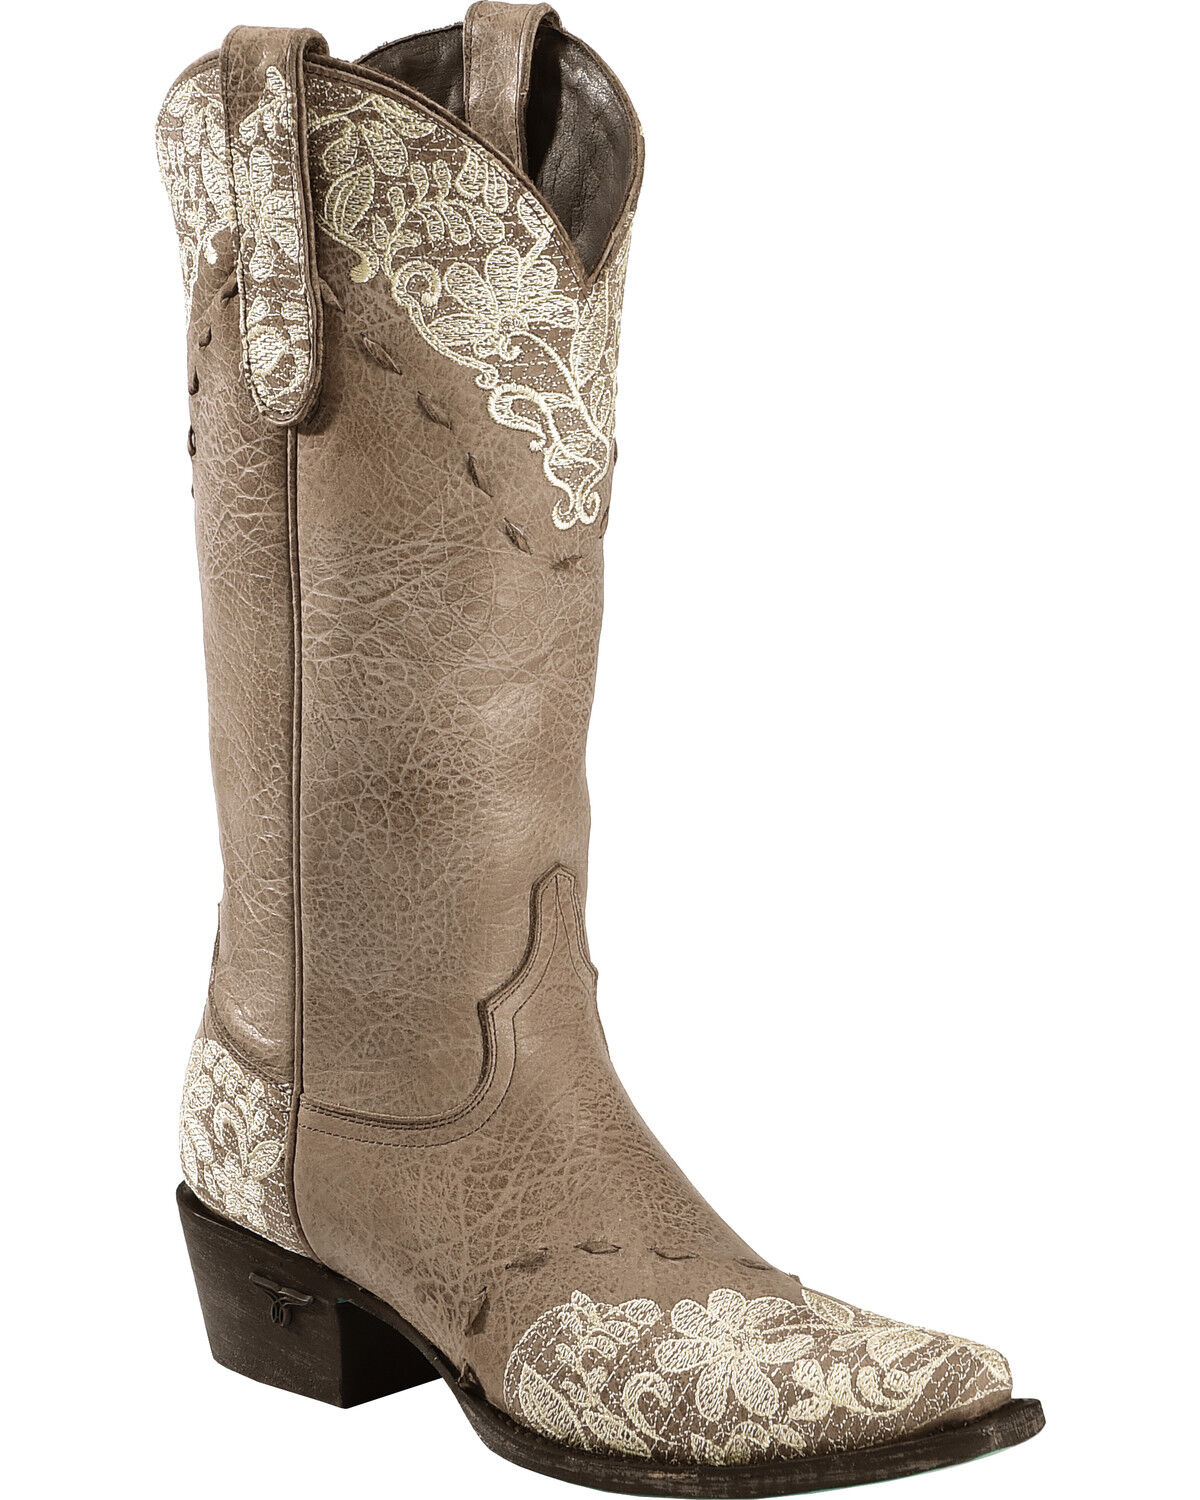 Jeni Lace Western Fashion Boots | Boot Barn